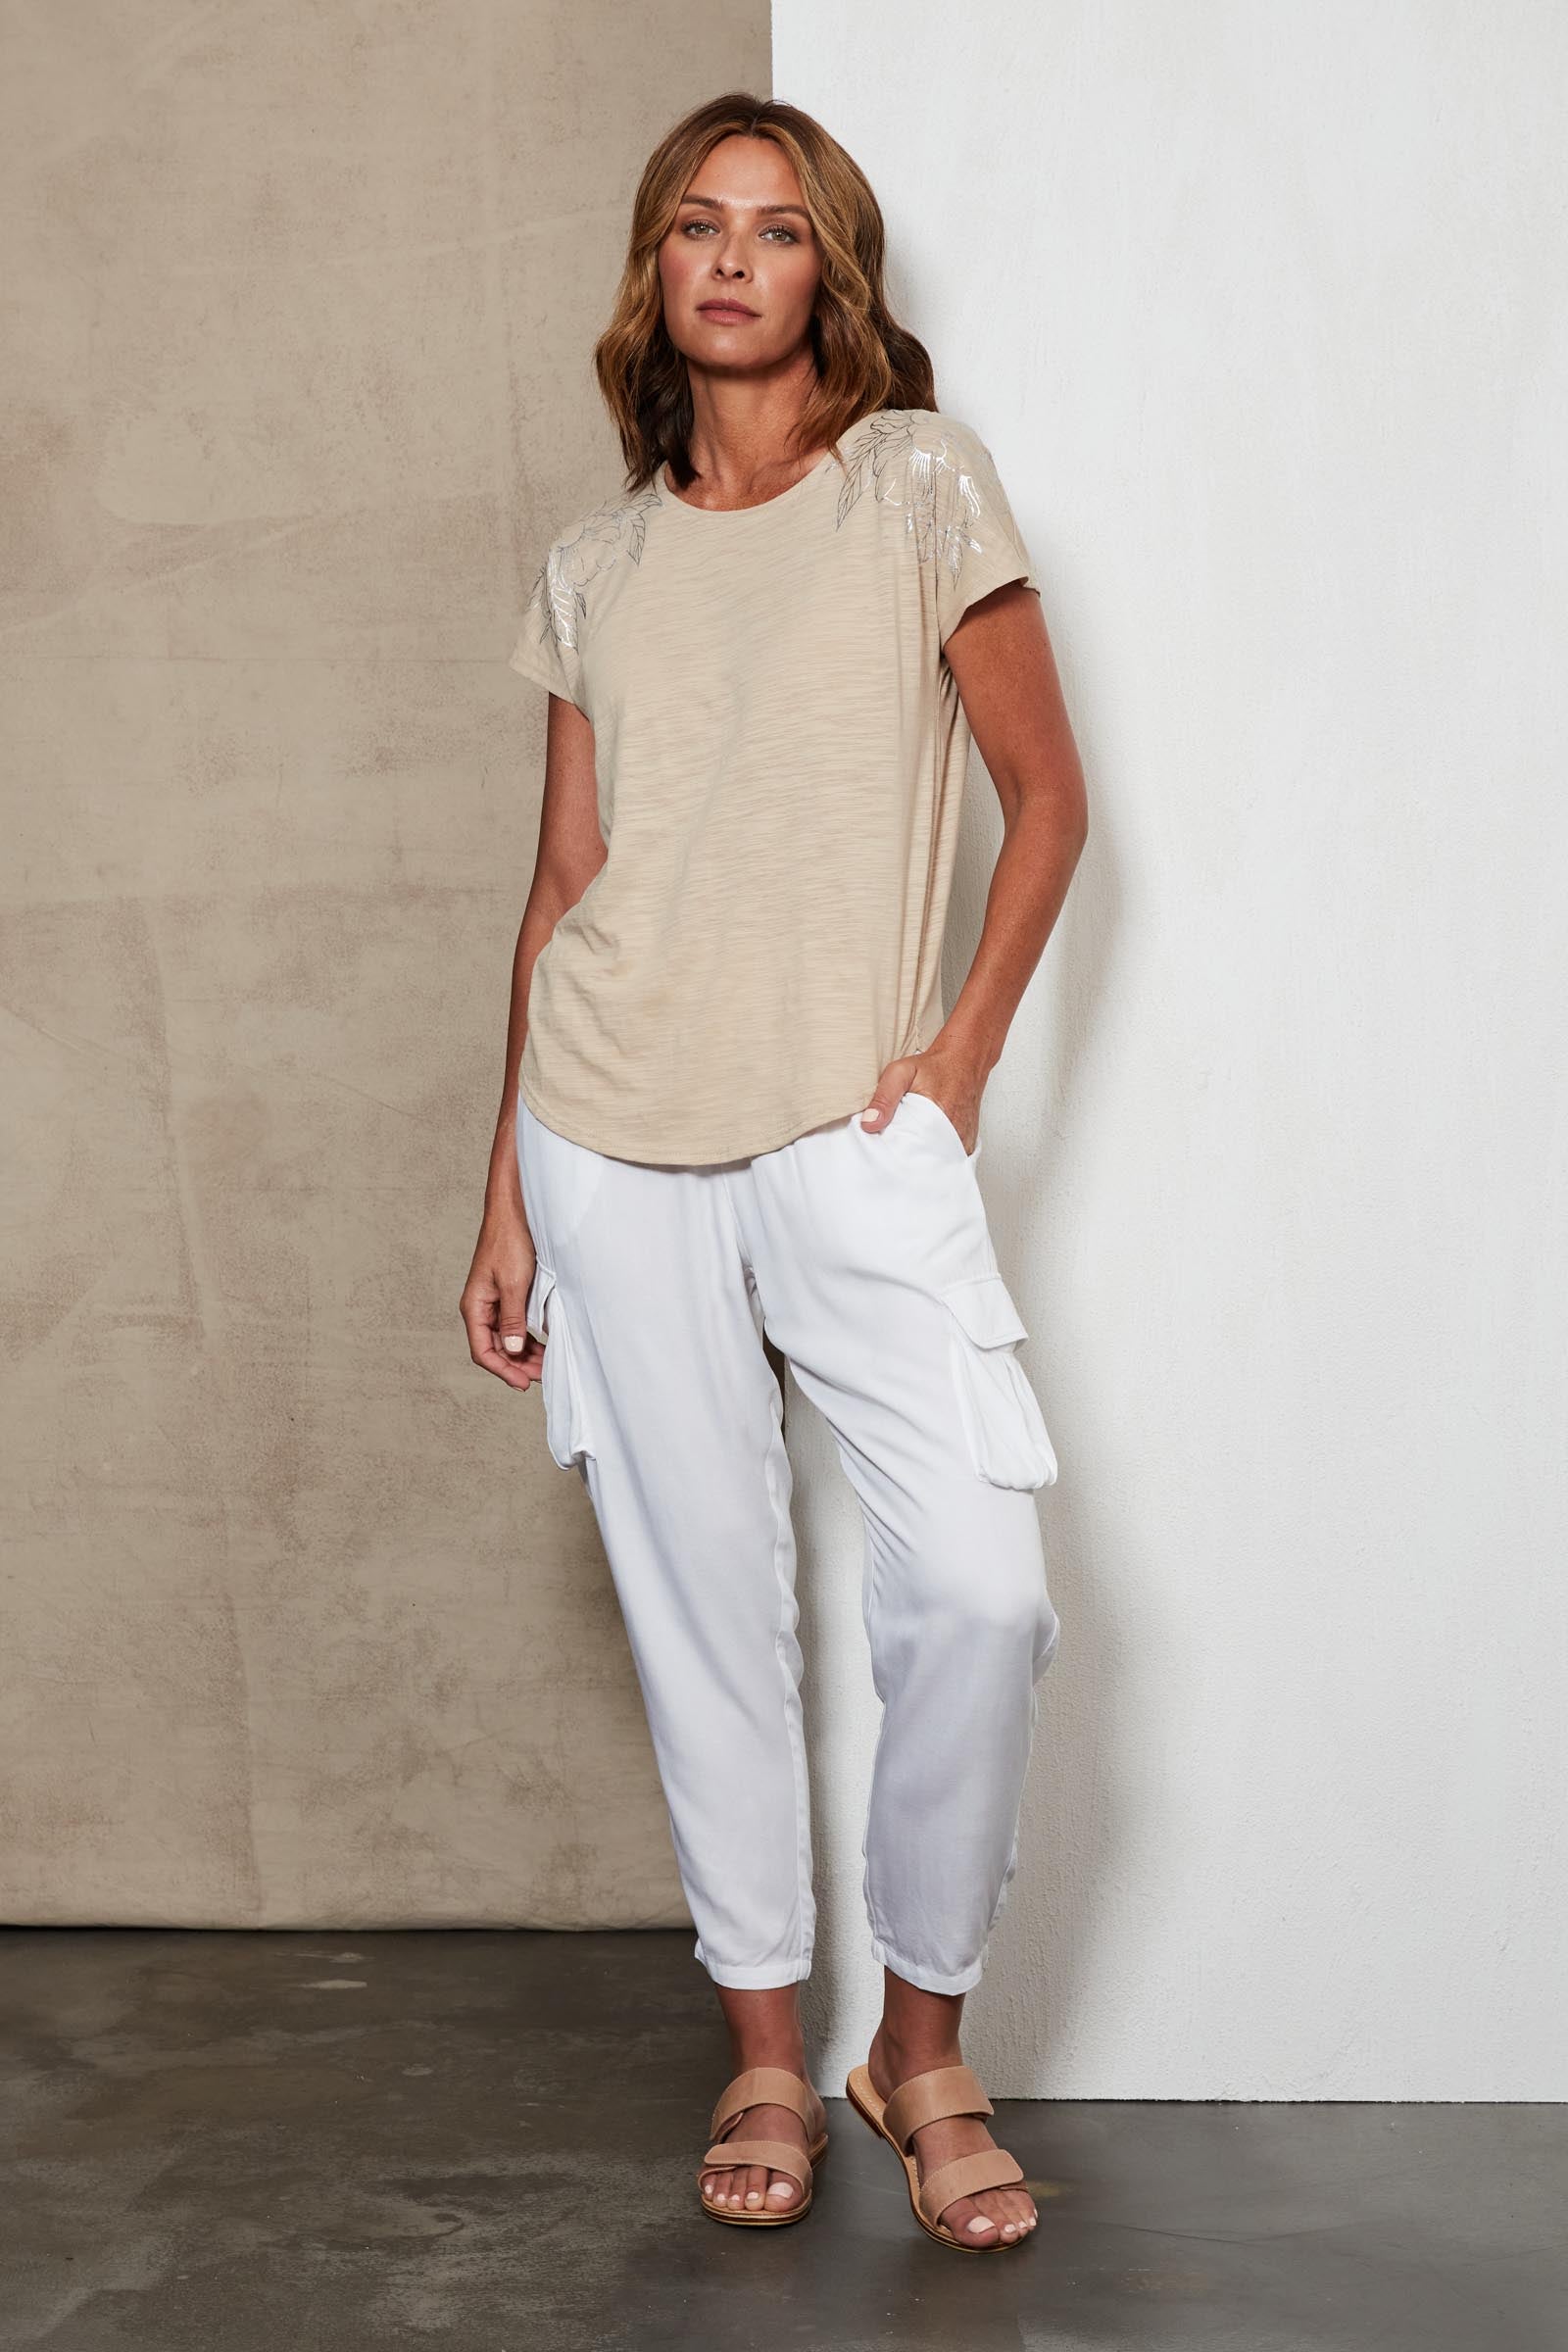 Marra Tshirt - Tusk - eb&ive Clothing - Top Tshirt S/S